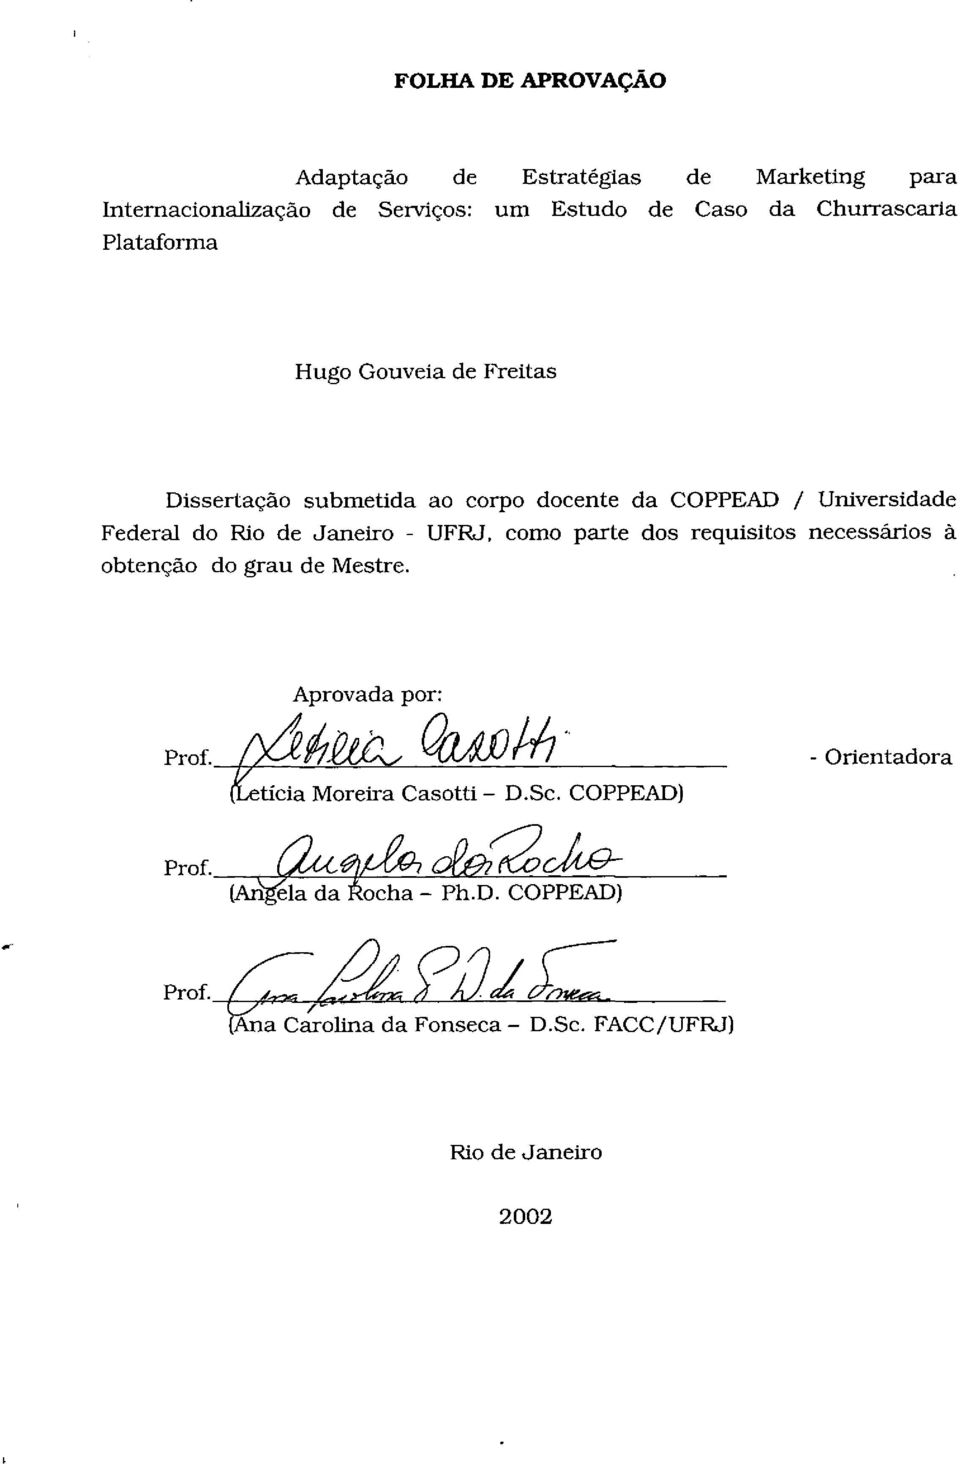 Rio de Janeiro - UFRJ. como parte dos requisitos necessários à obtenção do grau de Mestre. Aprovada por: prof.